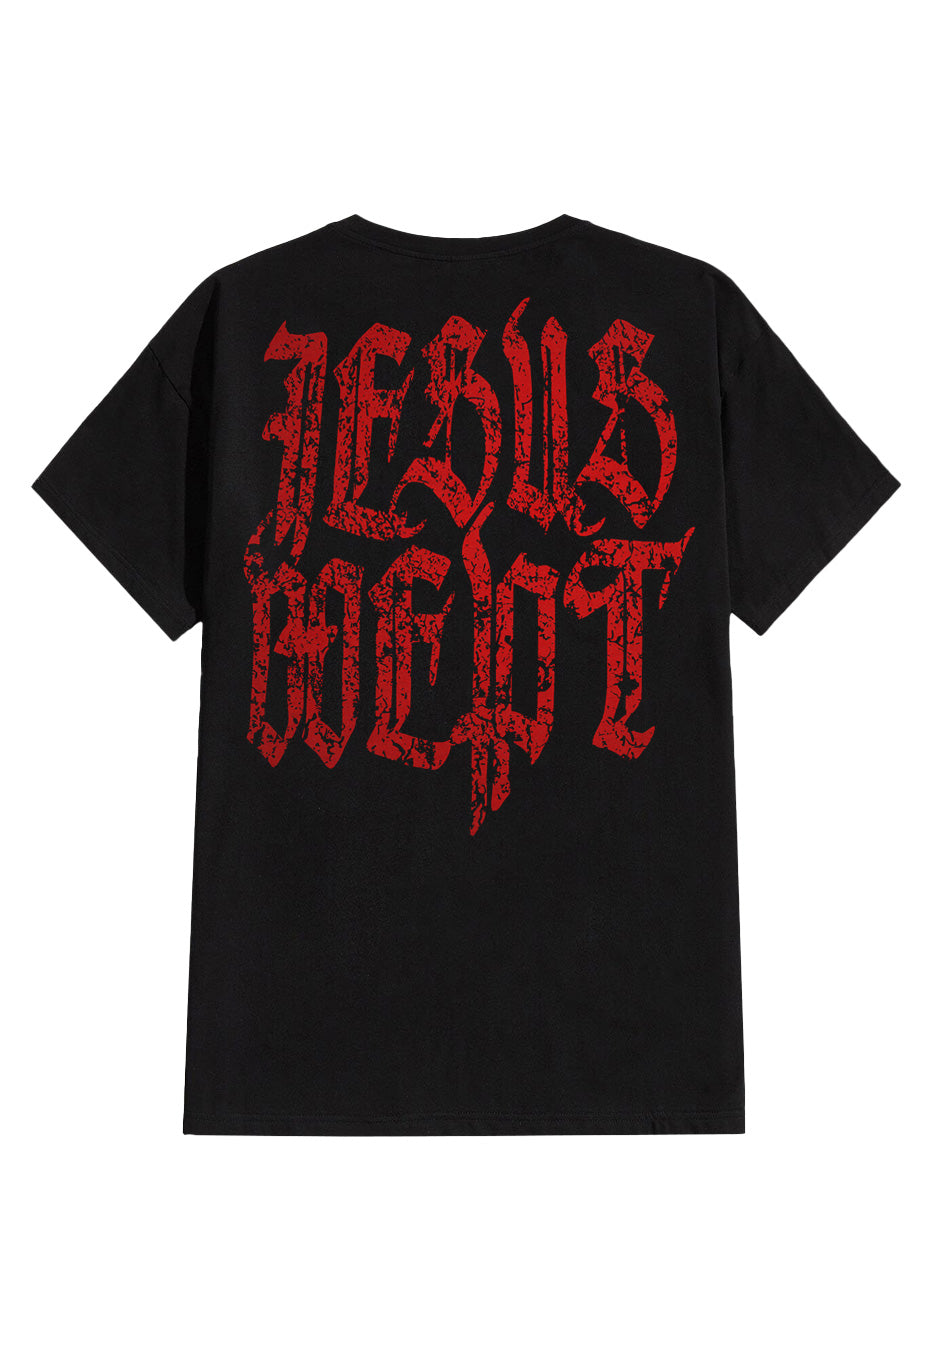 Machine Head - Jesus Wept - T-Shirt